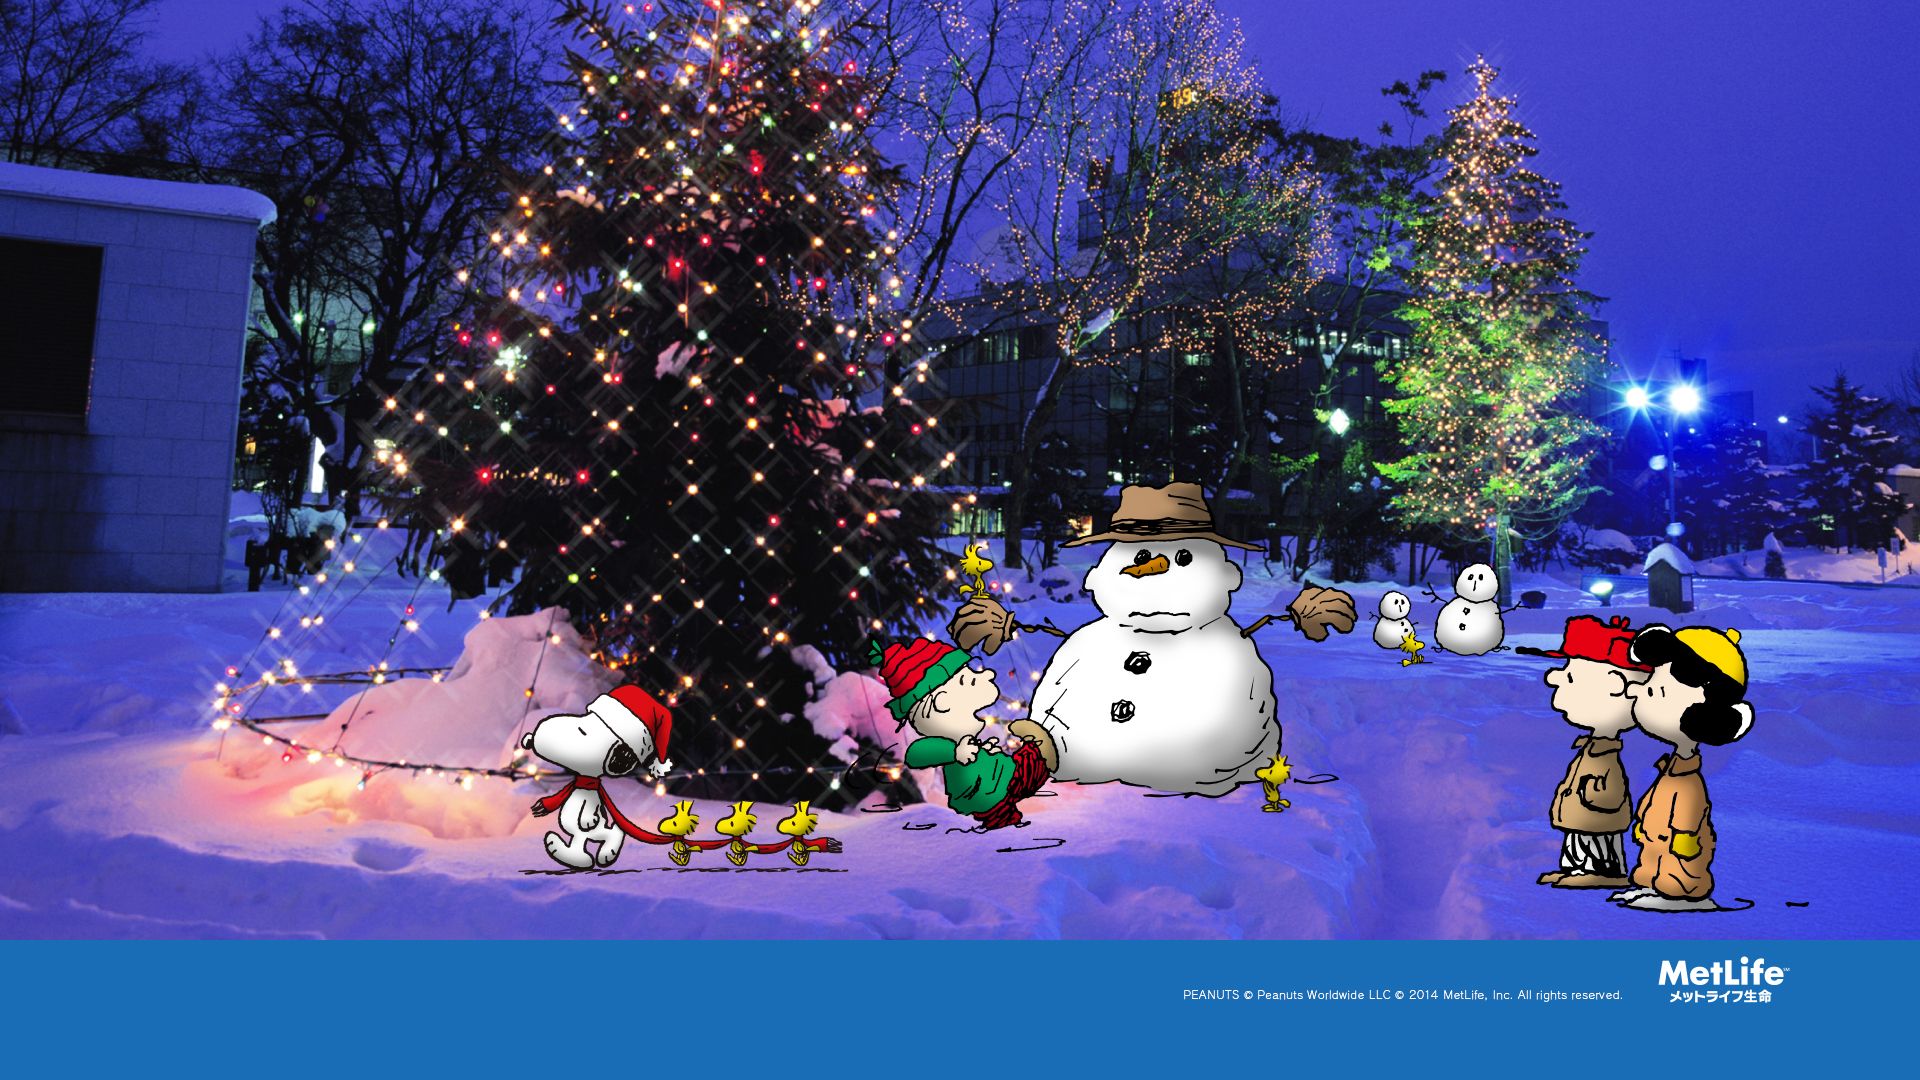 スヌーピークリスマス壁紙,クリスマスツリー,雪だるま,冬,雪,クリスマス